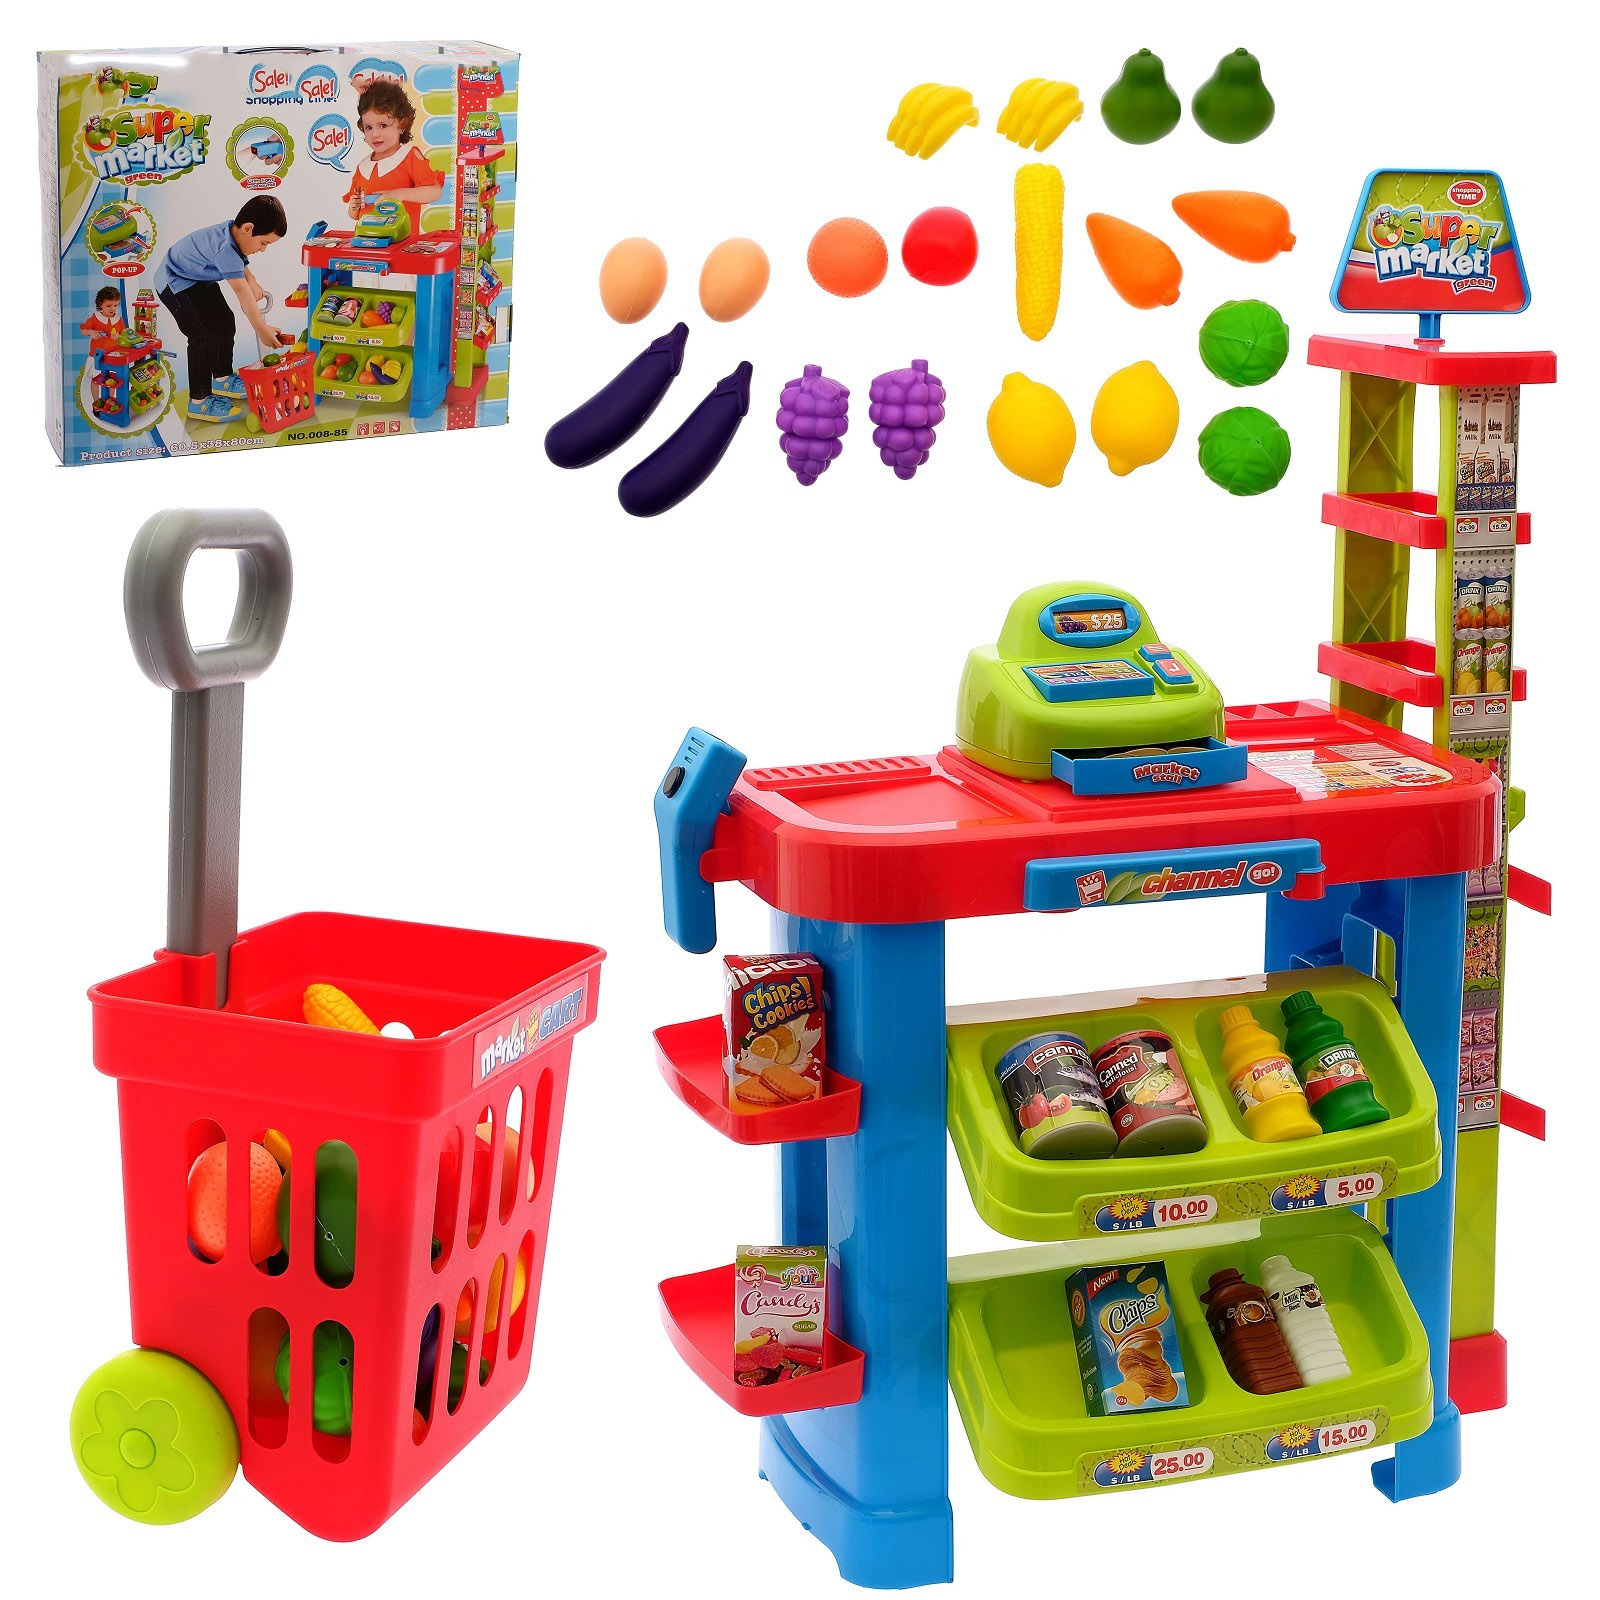 Игрушки купить рядом. Игрушки для детского сада. Игровой набор магазин. Набор игрушек для детей. Игровые наборы для детей.